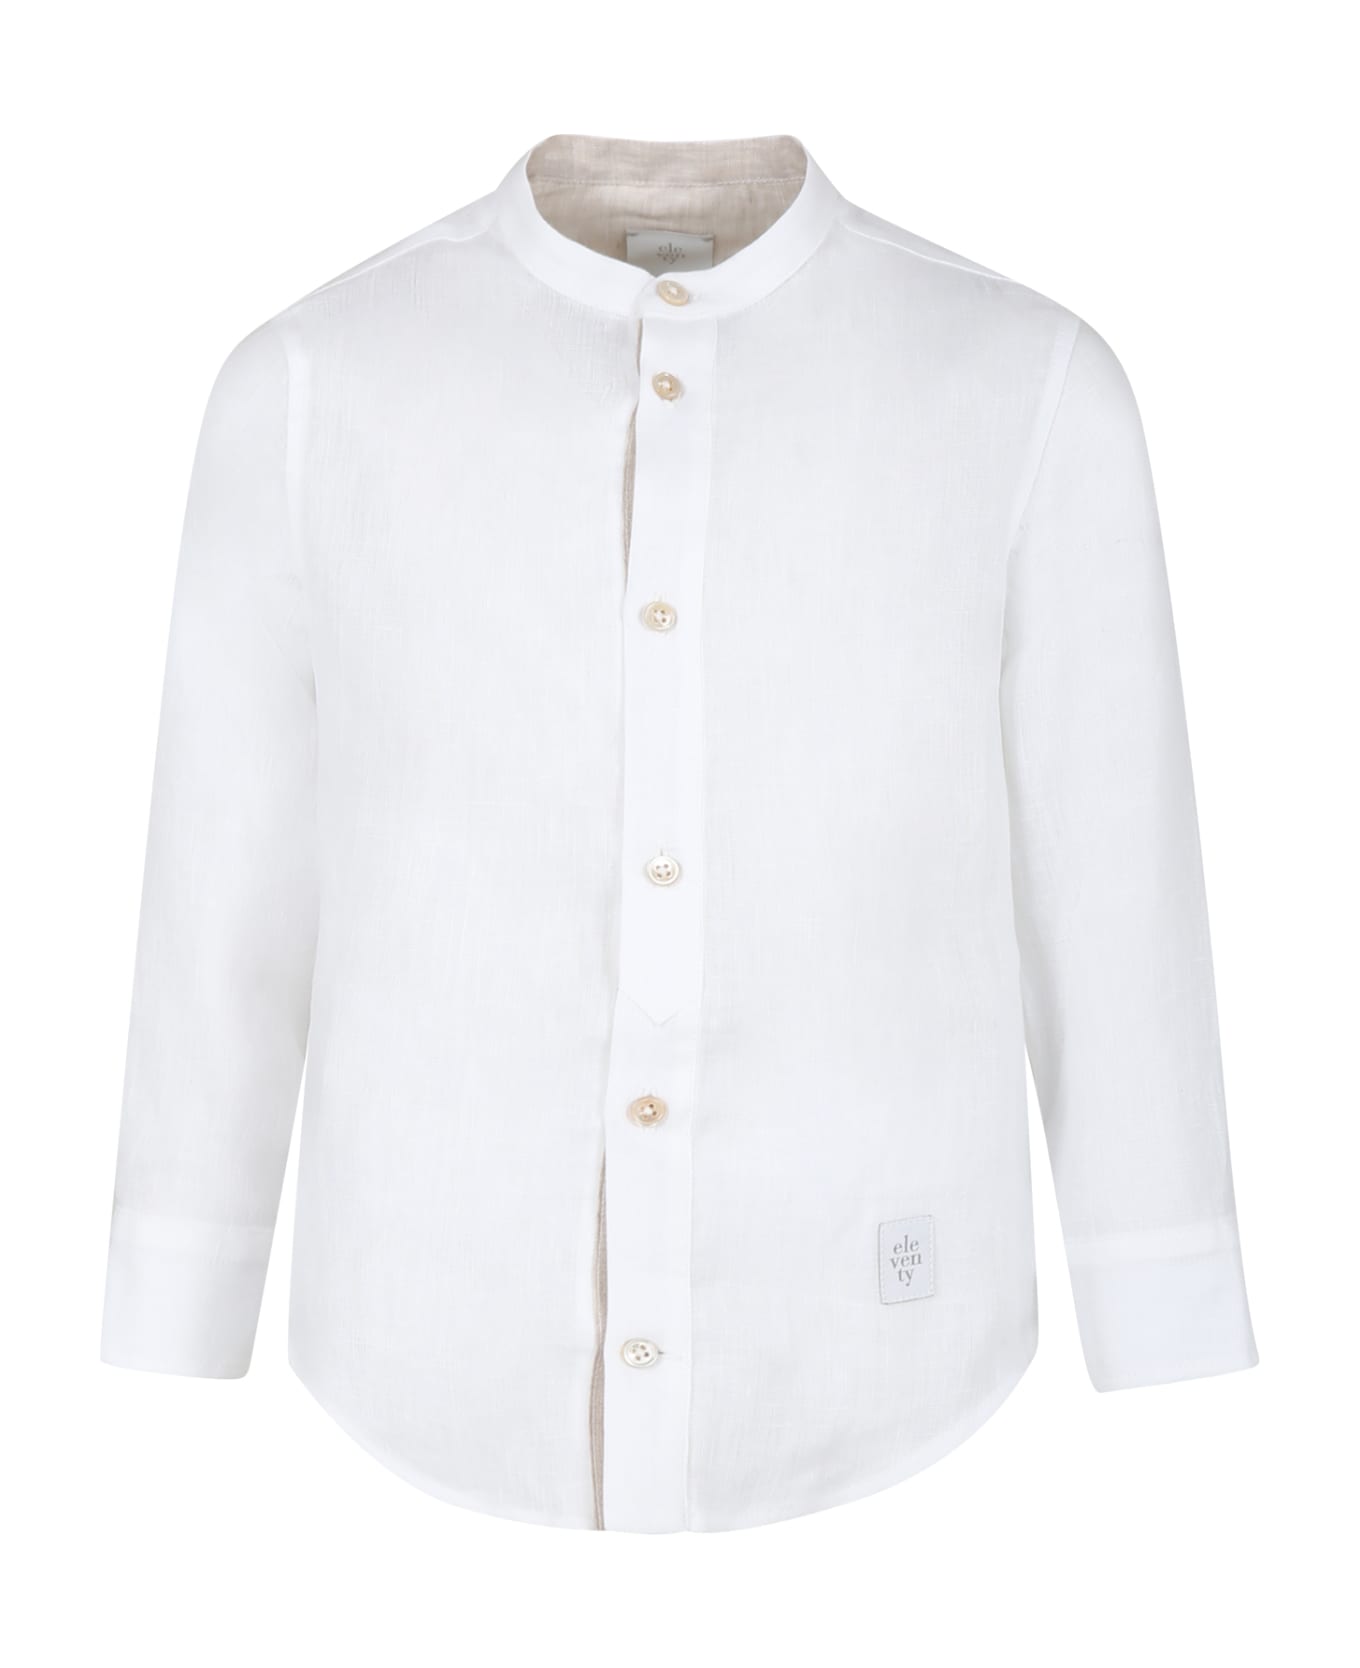 Eleventy White Shirt For Boy With Logo - Ivory シャツ